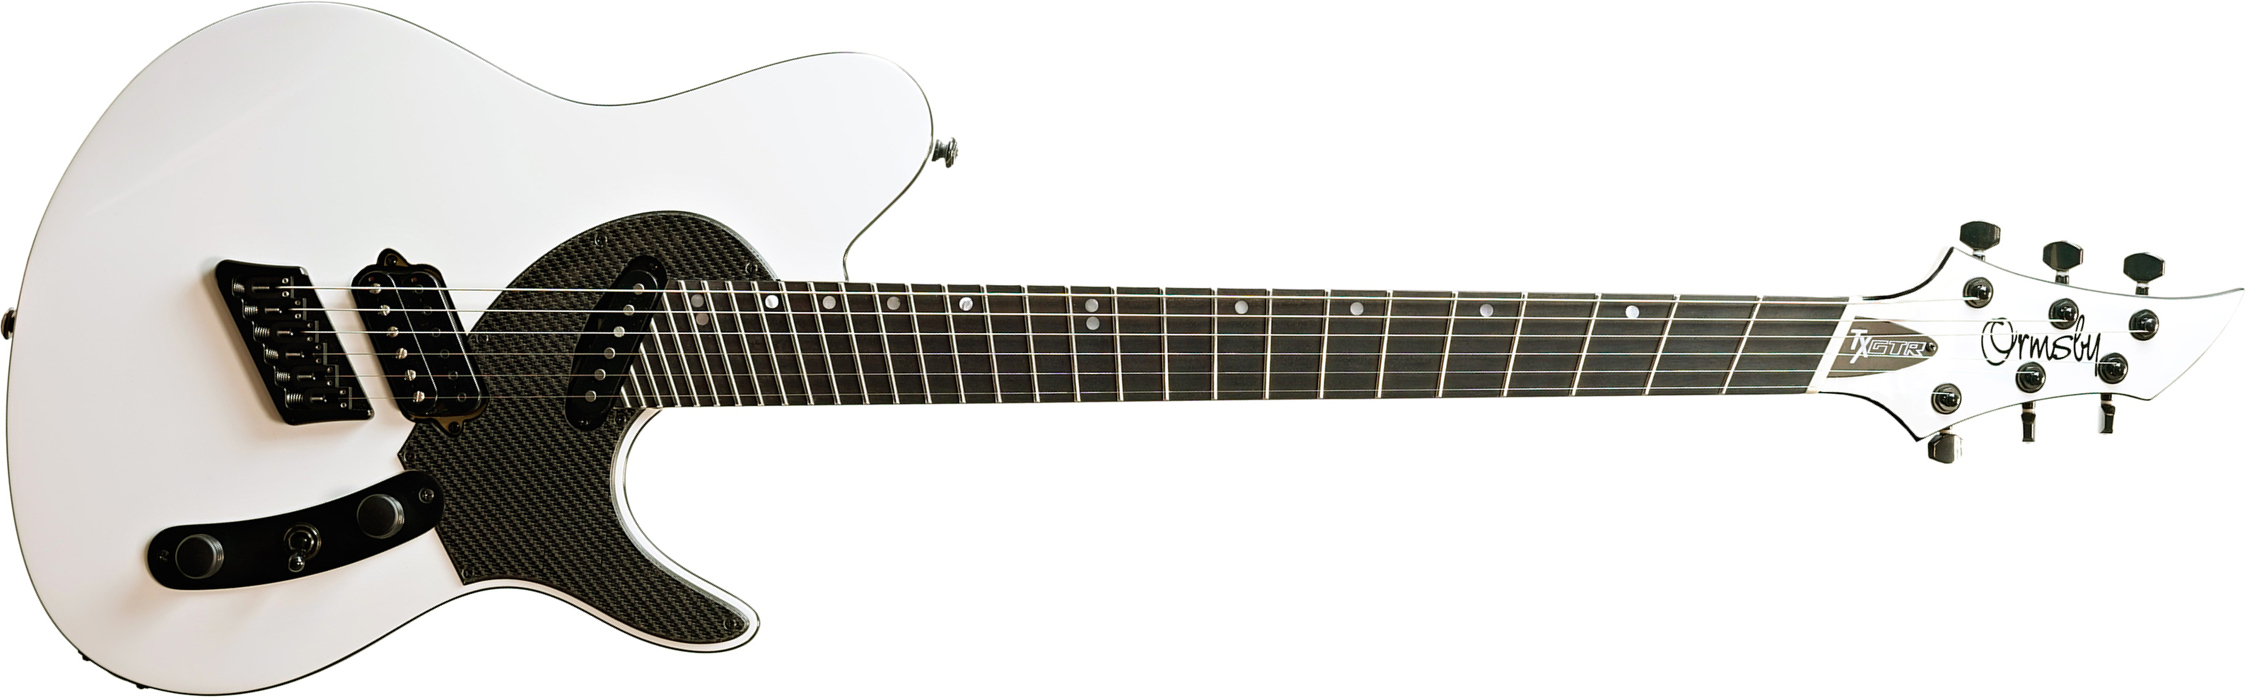 Ormsby Tx Gtr Carbon 6c Multiscale Hs Ht Eb - Ermine White - E-Gitarre in Teleform - Main picture